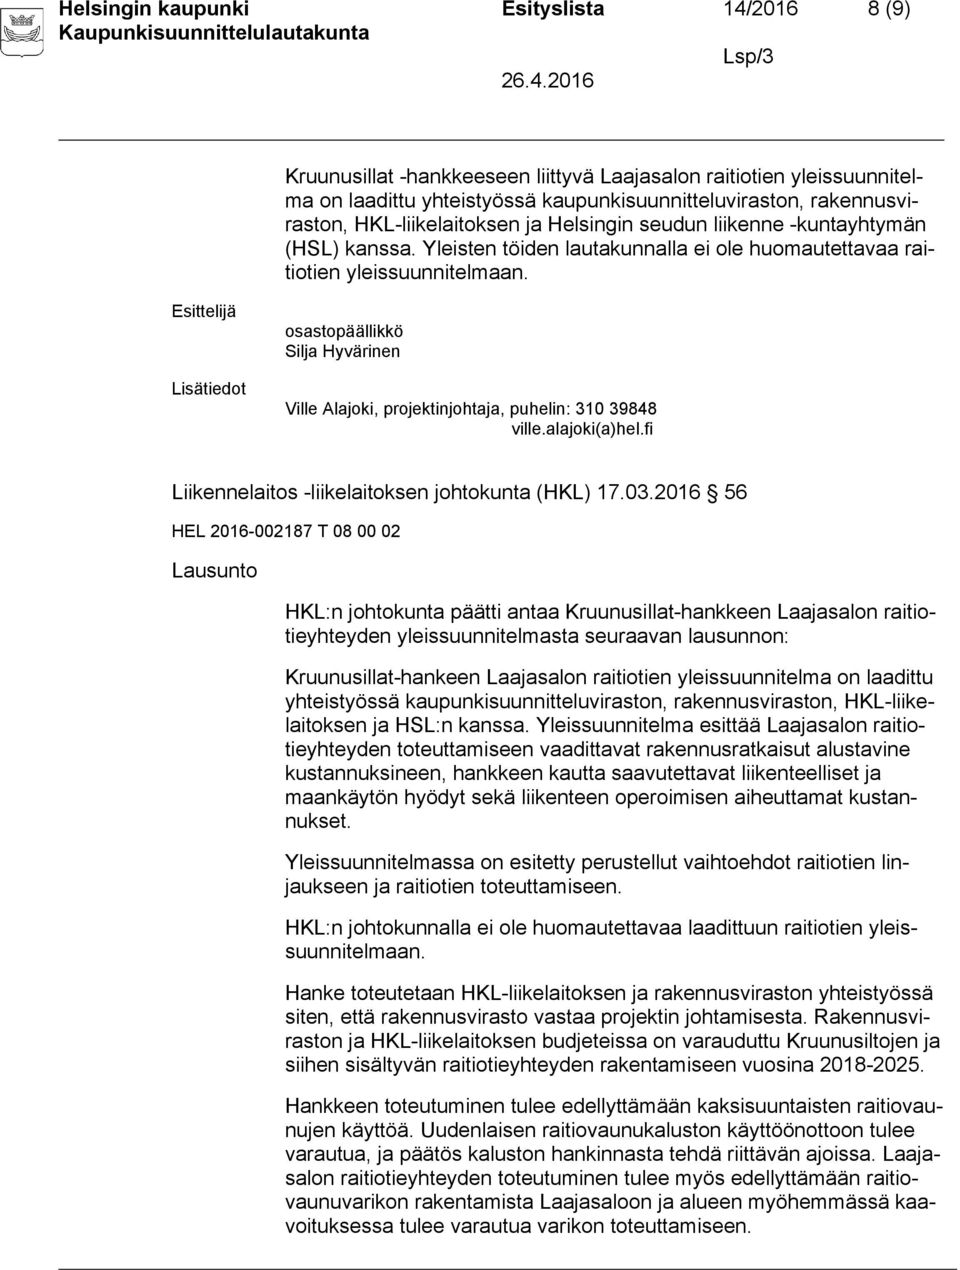 osastopäällikkö Silja Hyvärinen Ville Alajoki, projektinjohtaja, puhelin: 310 39848 ville.alajoki(a)hel.fi Liikennelaitos -liikelaitoksen johtokunta (HKL) 17.03.